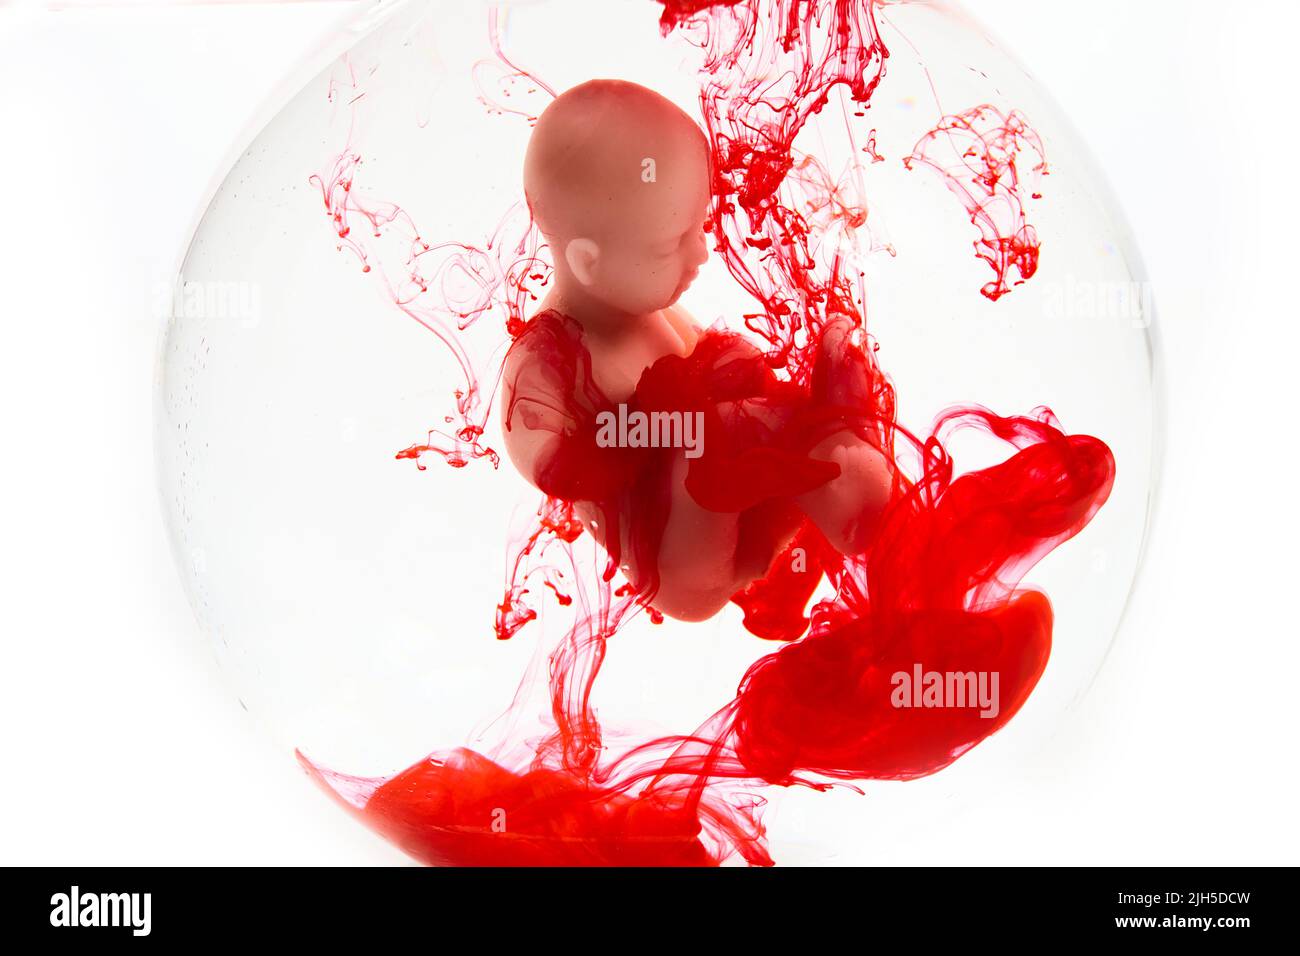 Concept d'avortement. Bébé poupée dans le sang rouge ressemble à l'abortation. Banque D'Images